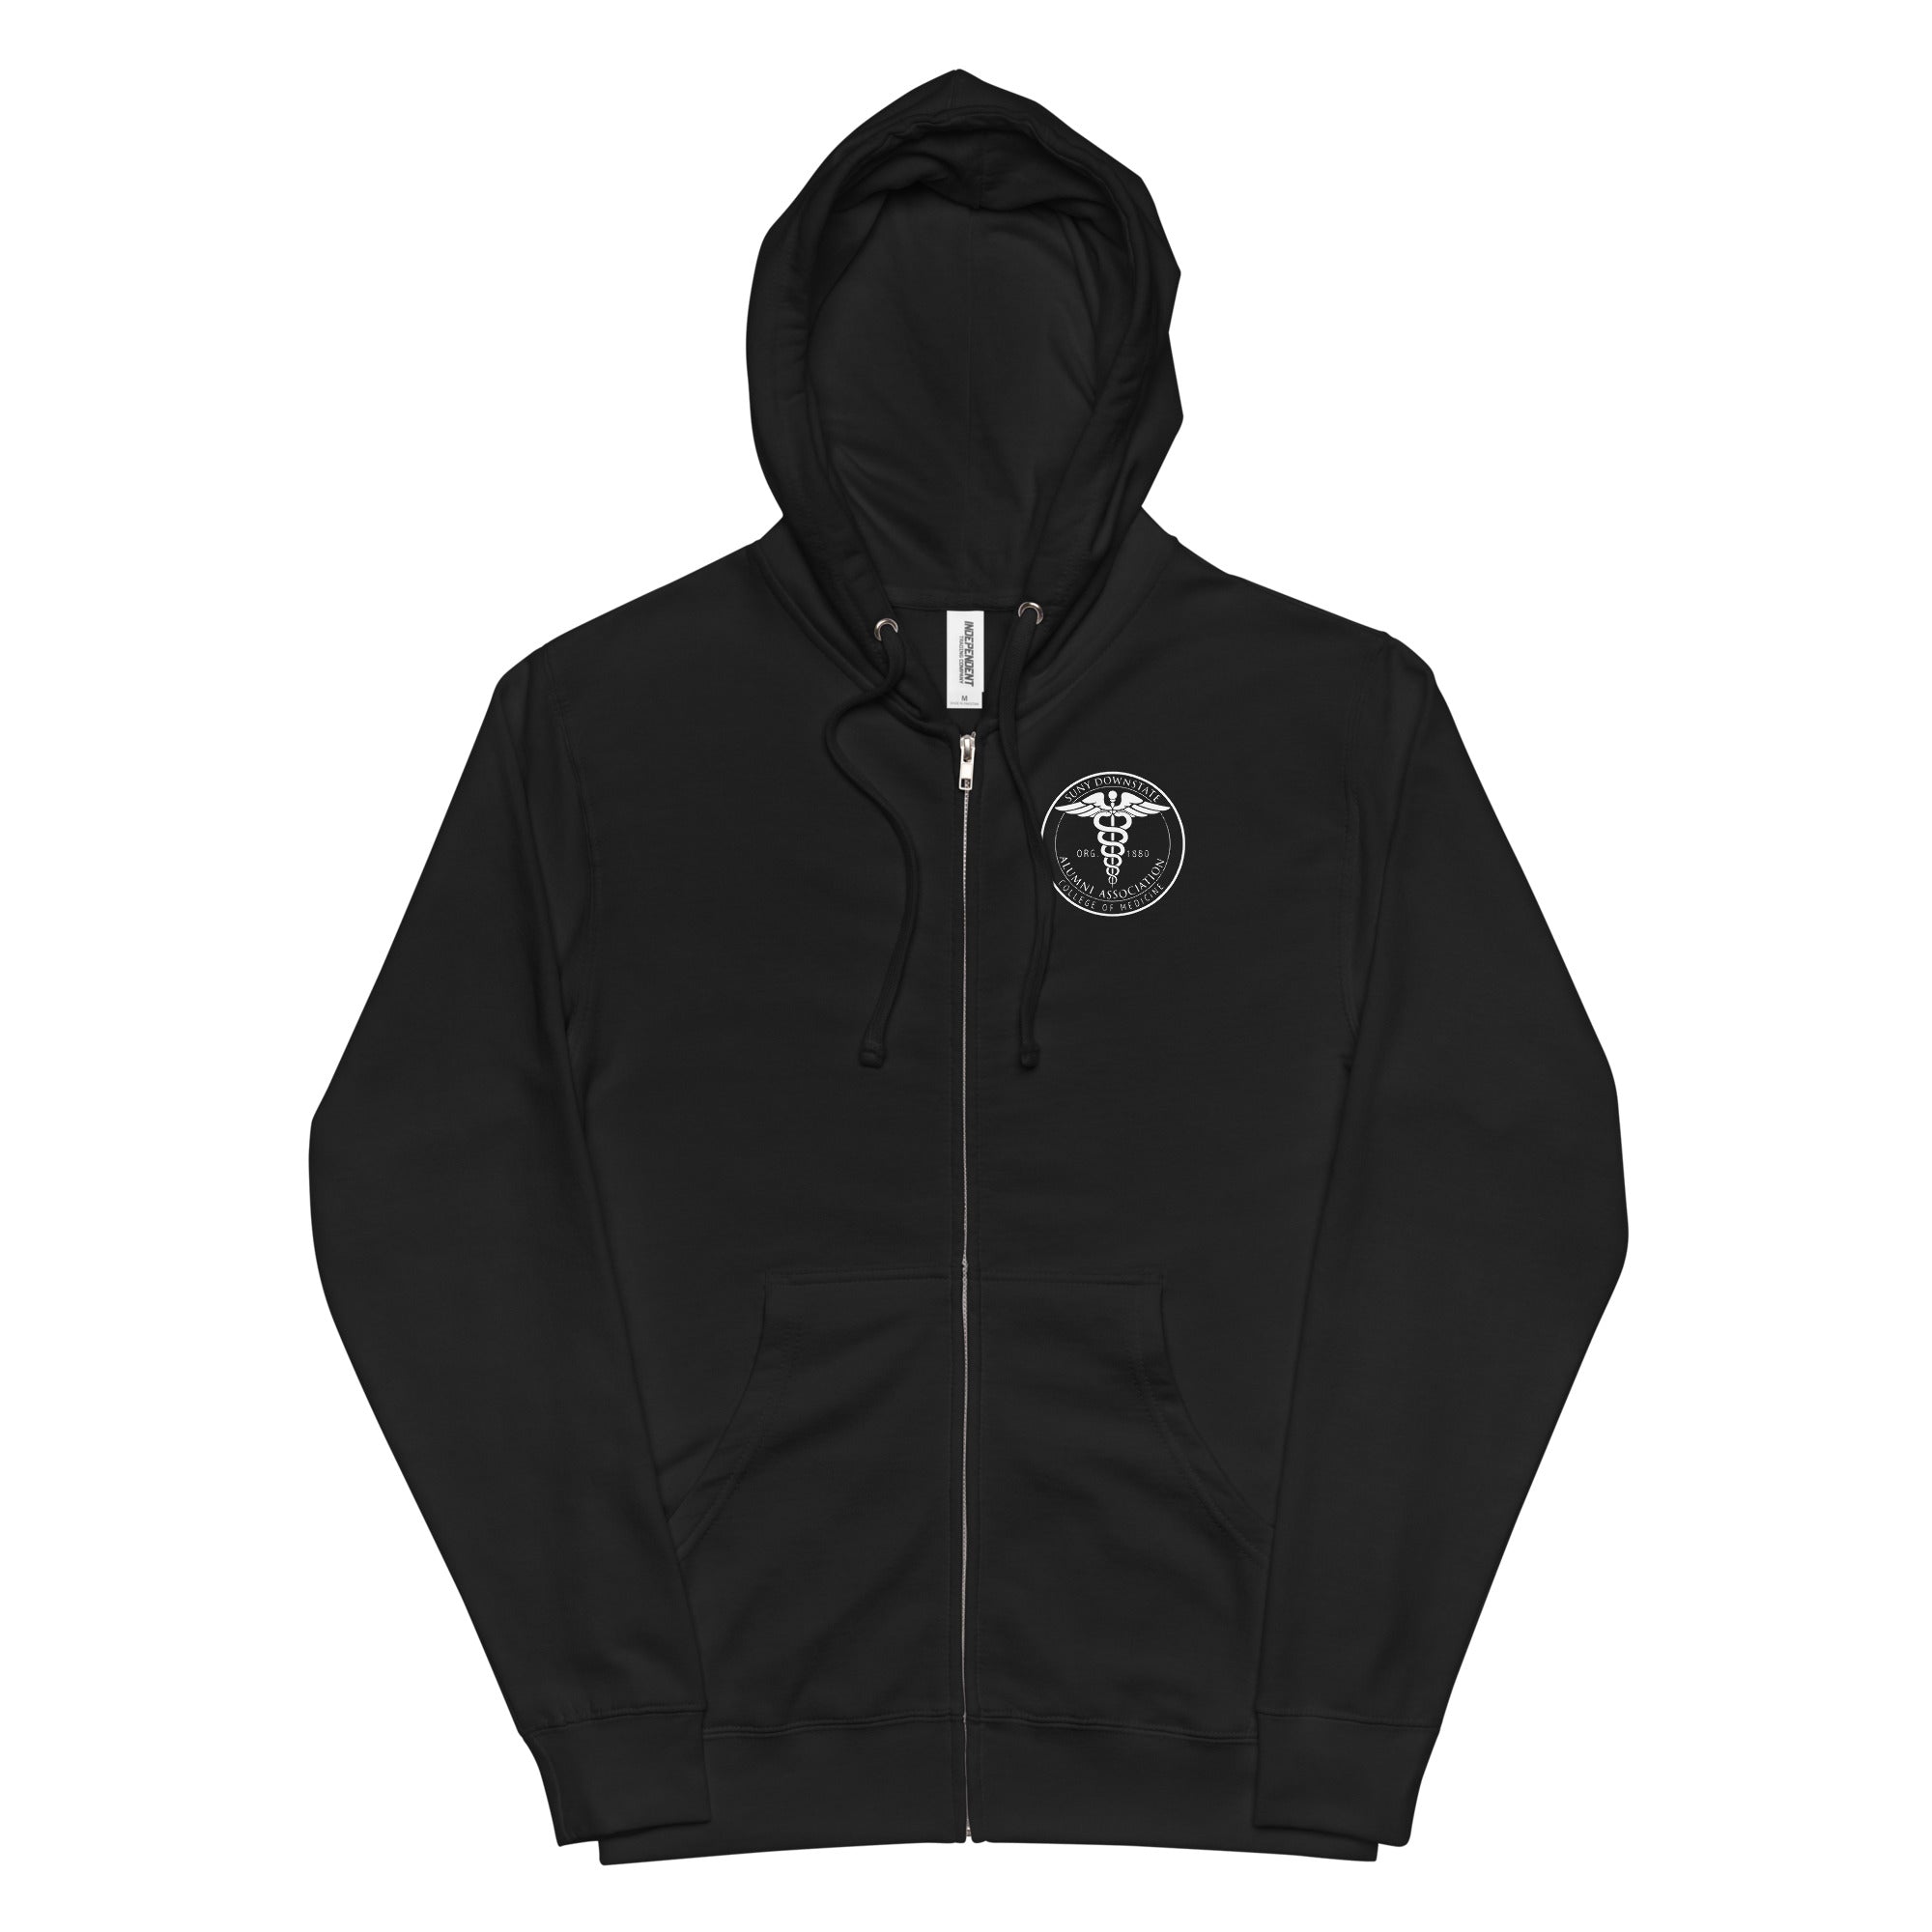 AACMSD Unisex fleece zip up hoodie